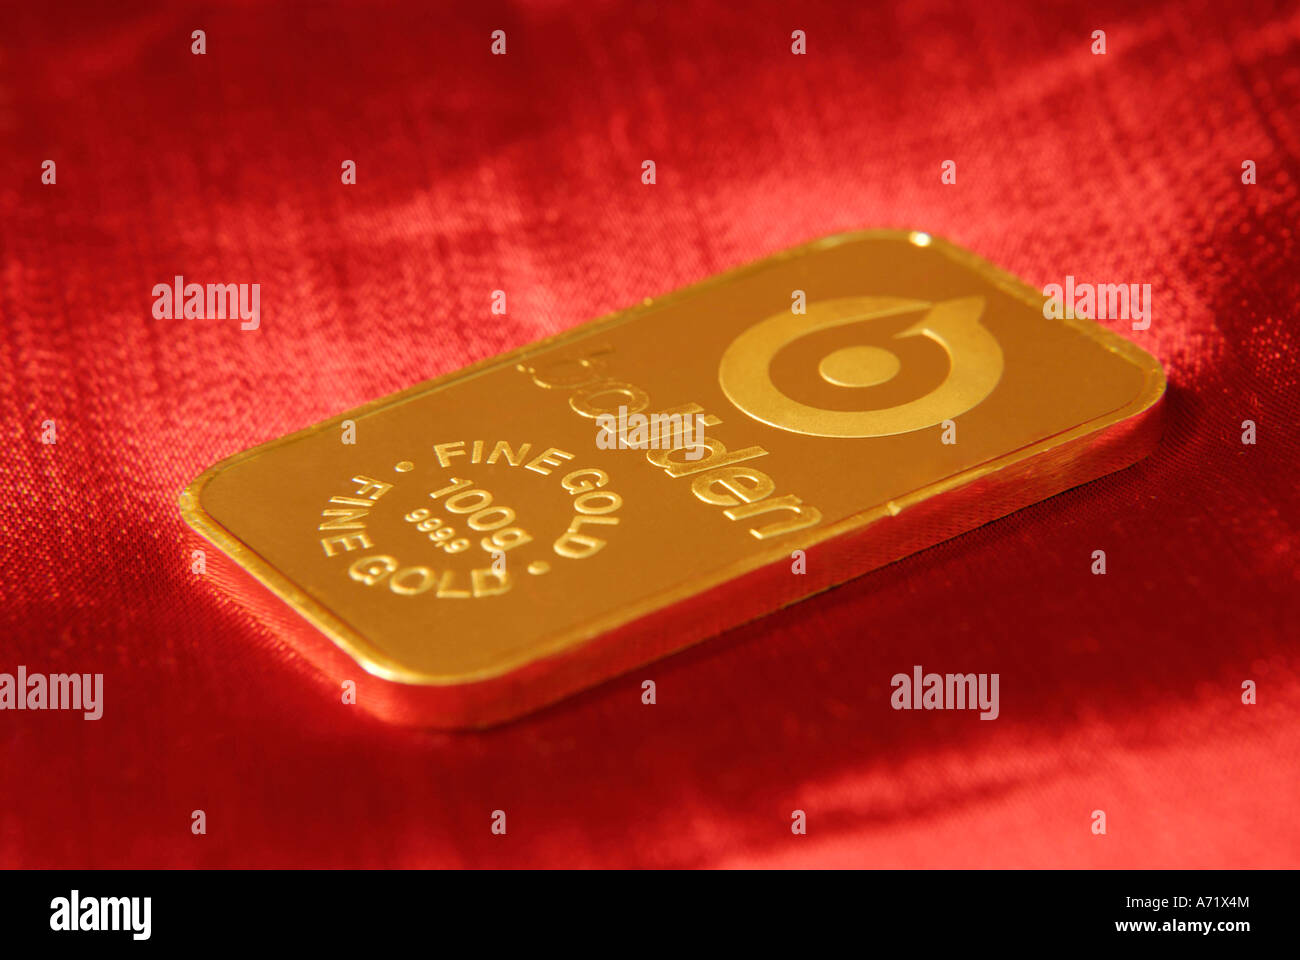 100 Gramm schwere solide Goldbarren aus schwedischen Bergbauunternehmen Boliden hautnah Stockfoto